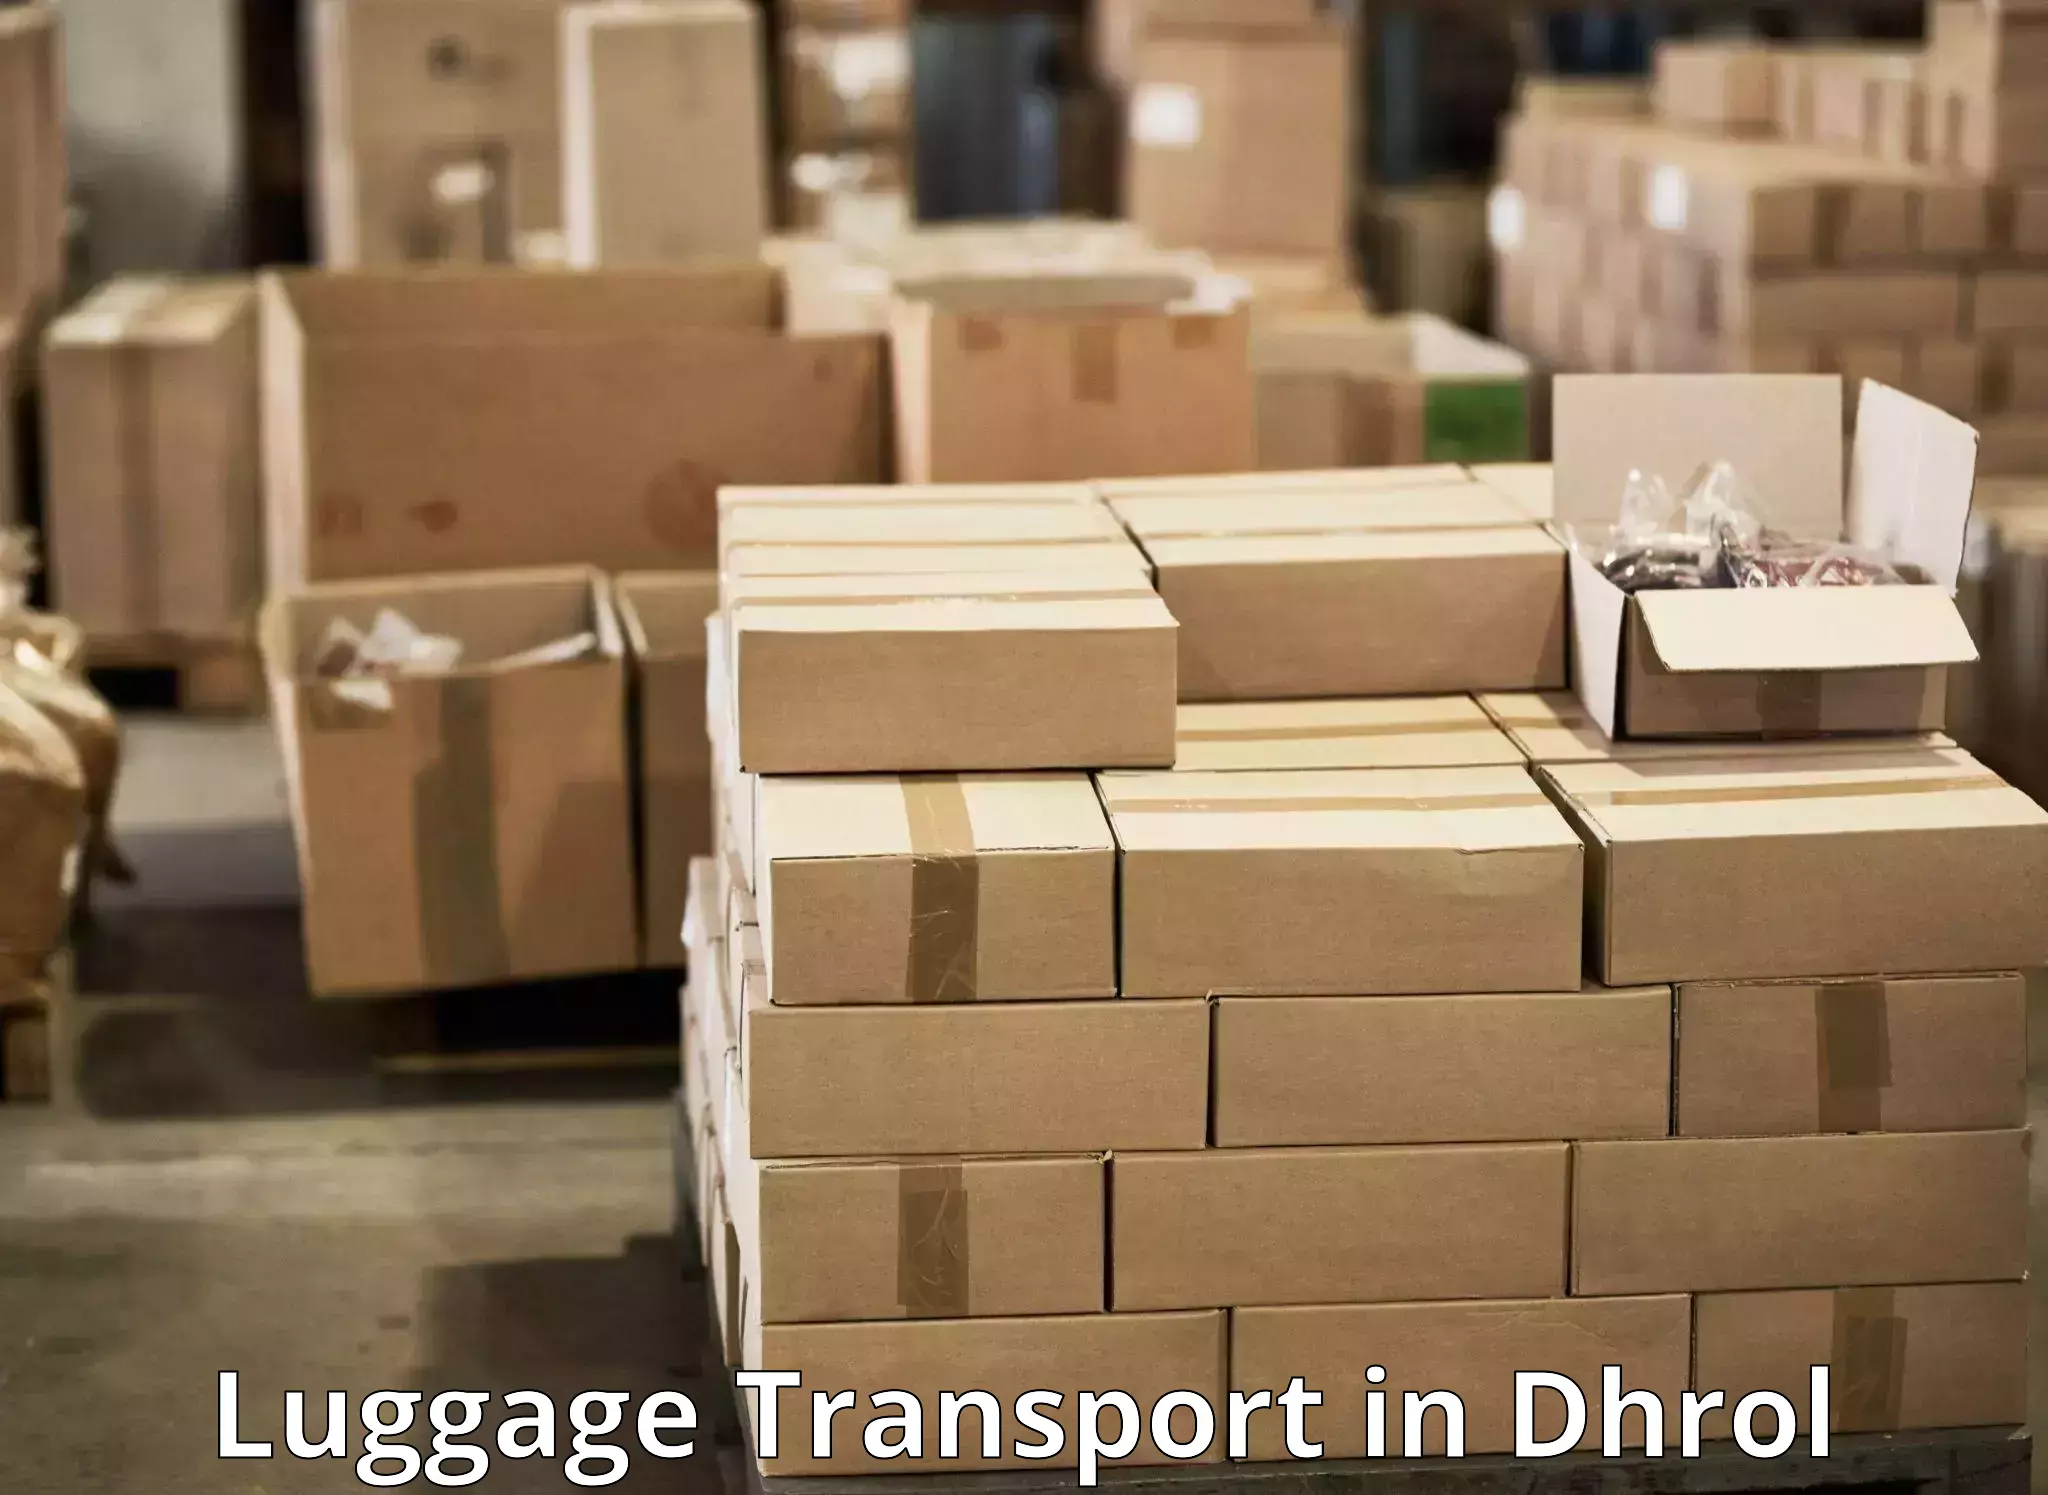 Luggage transfer service in Dhrol